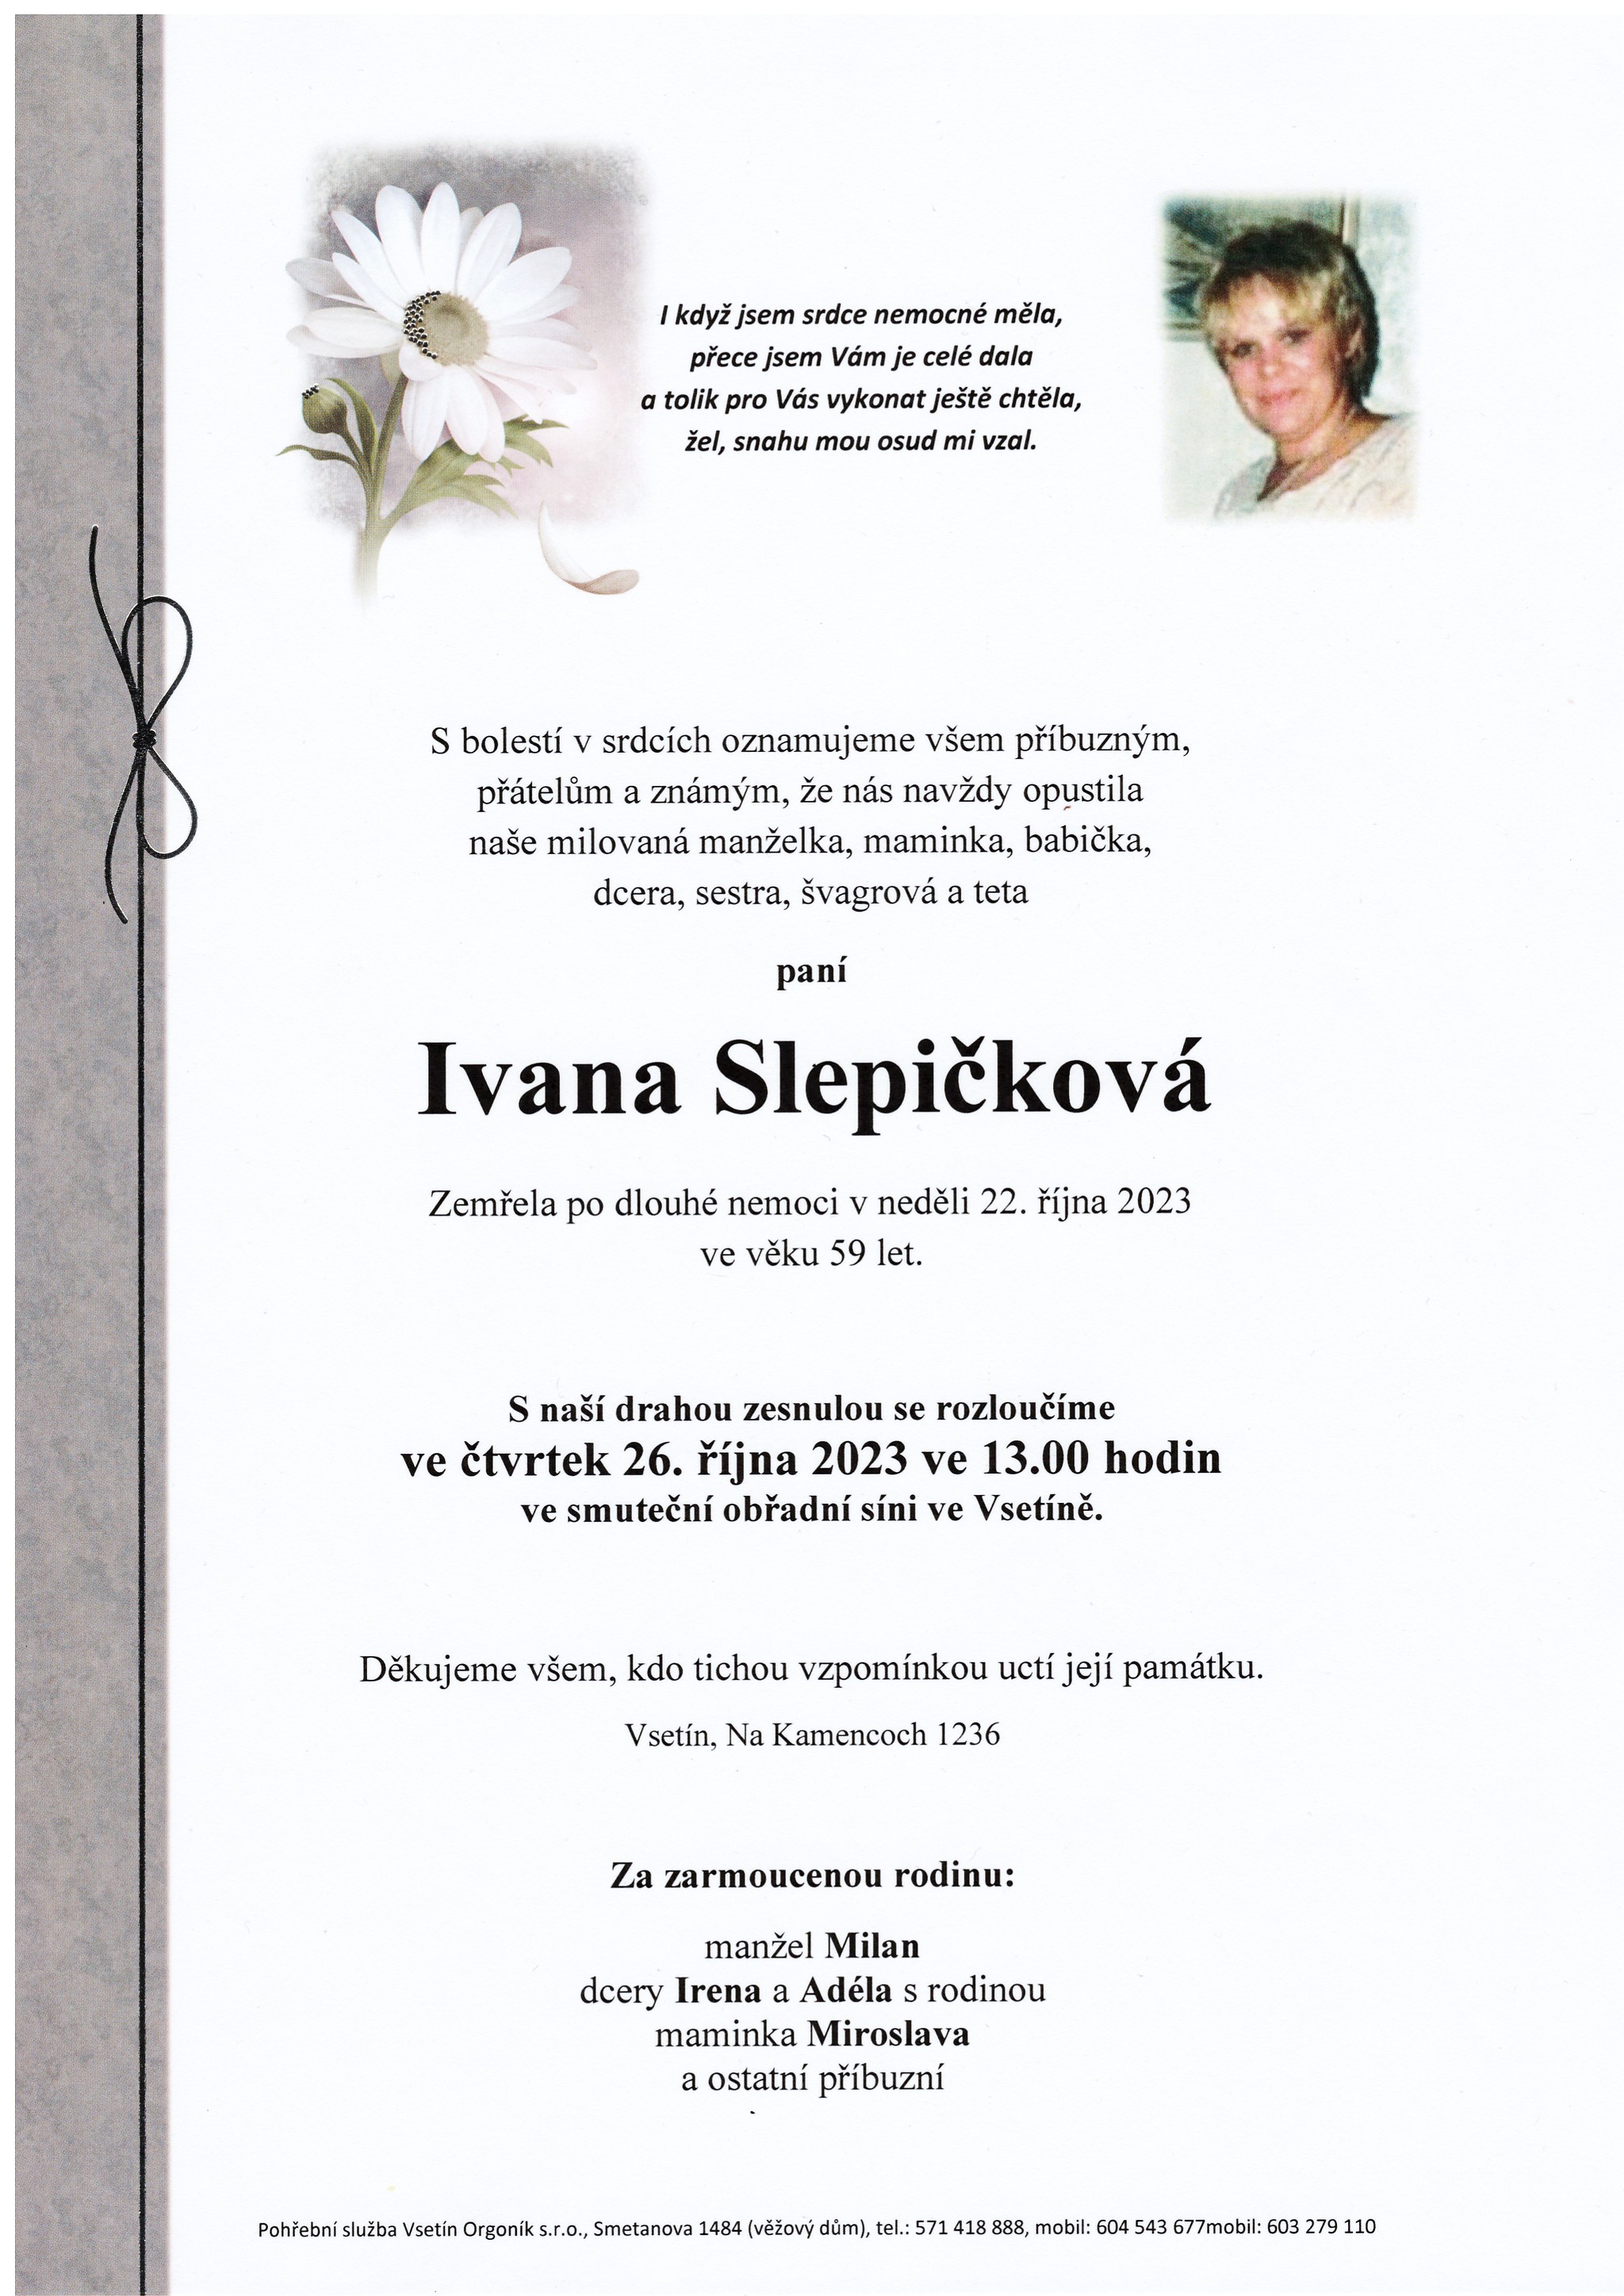 Ivana Slepičková